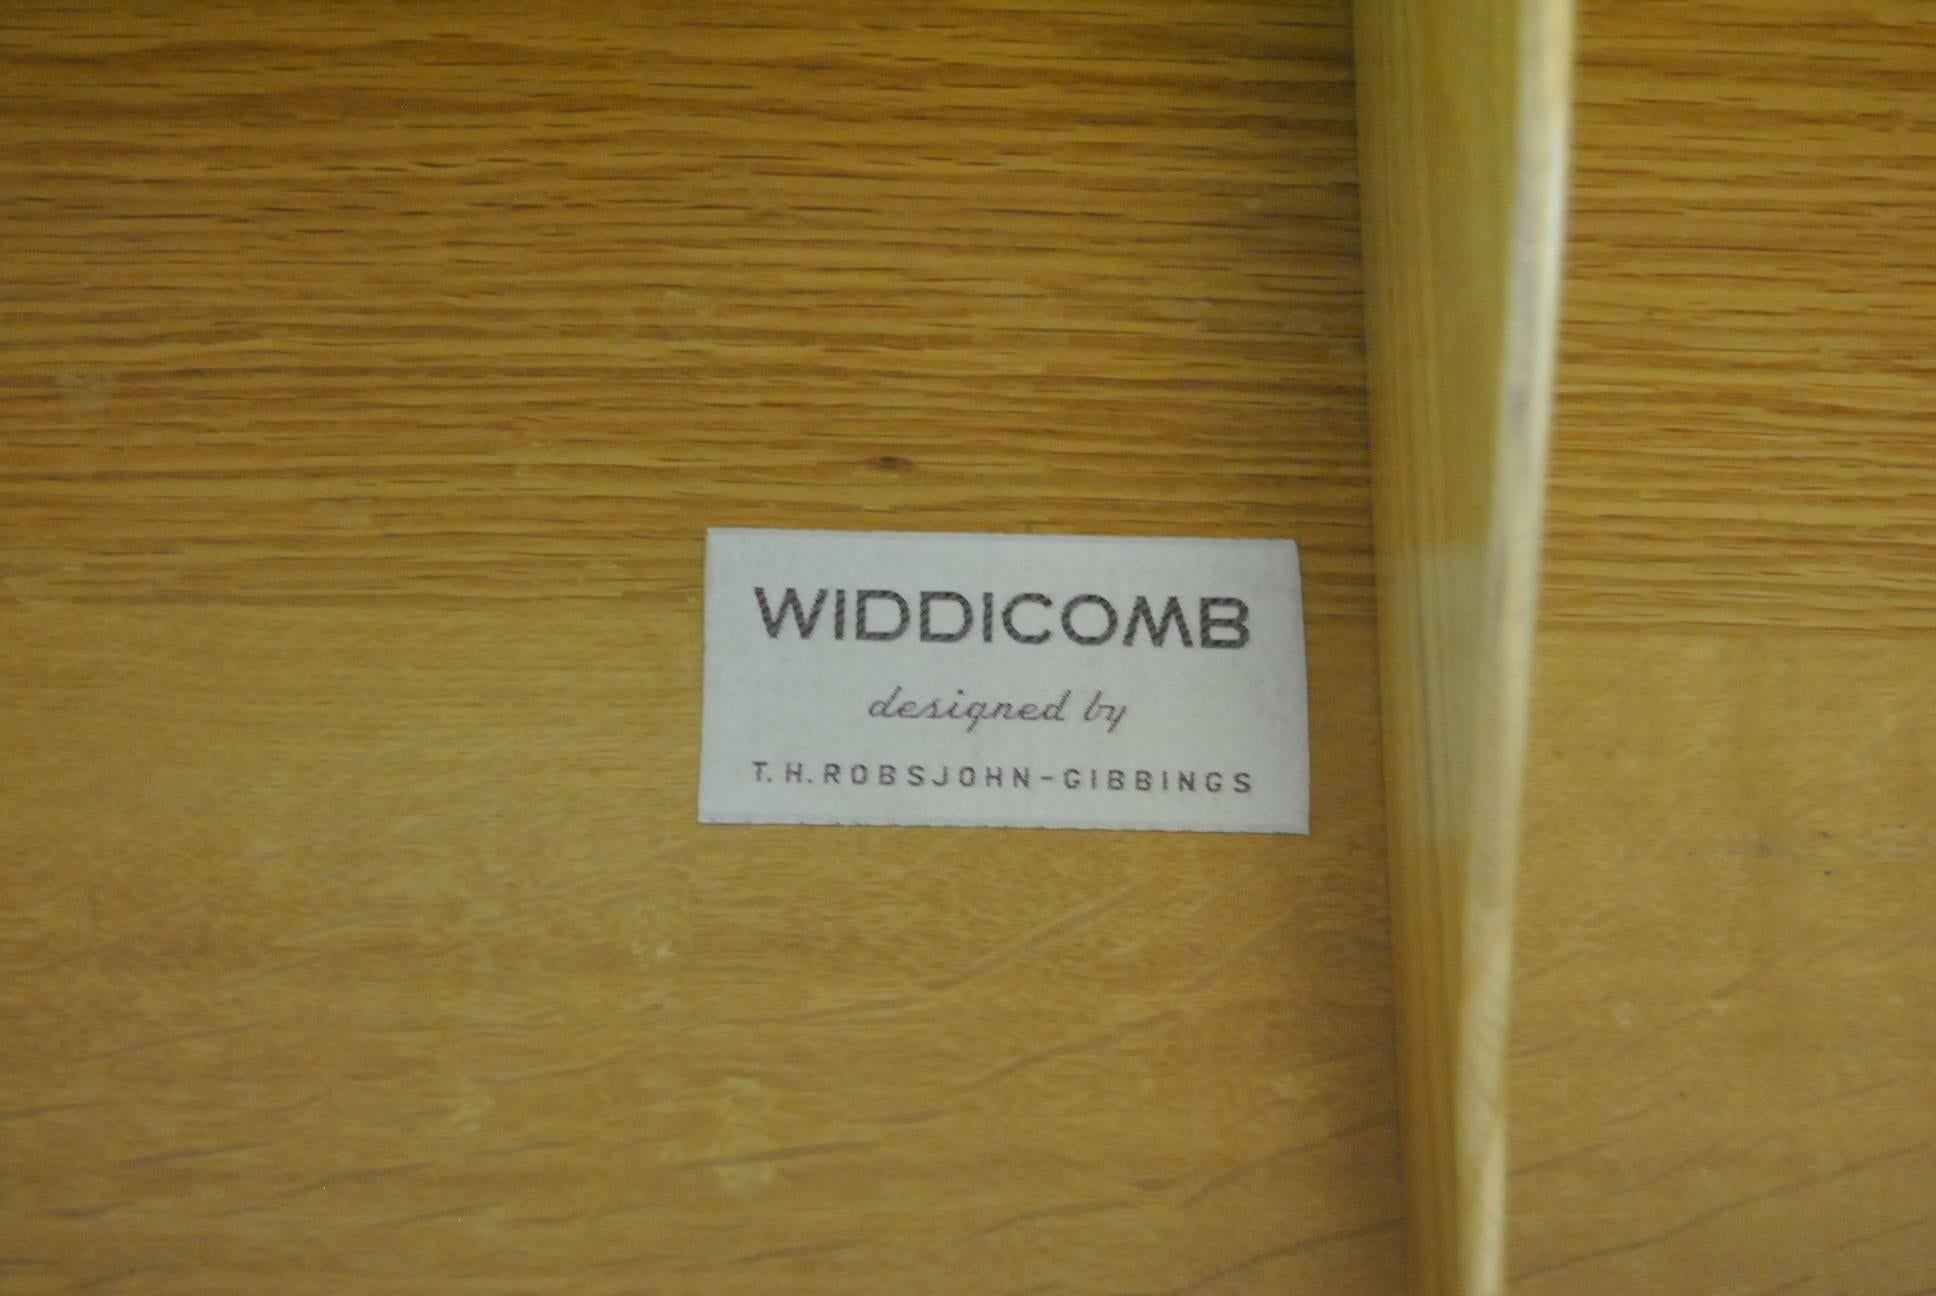 Midcentury Four-Drawer  Chest by T.H. Robsjohn-Gibbings for Widdicomb 1